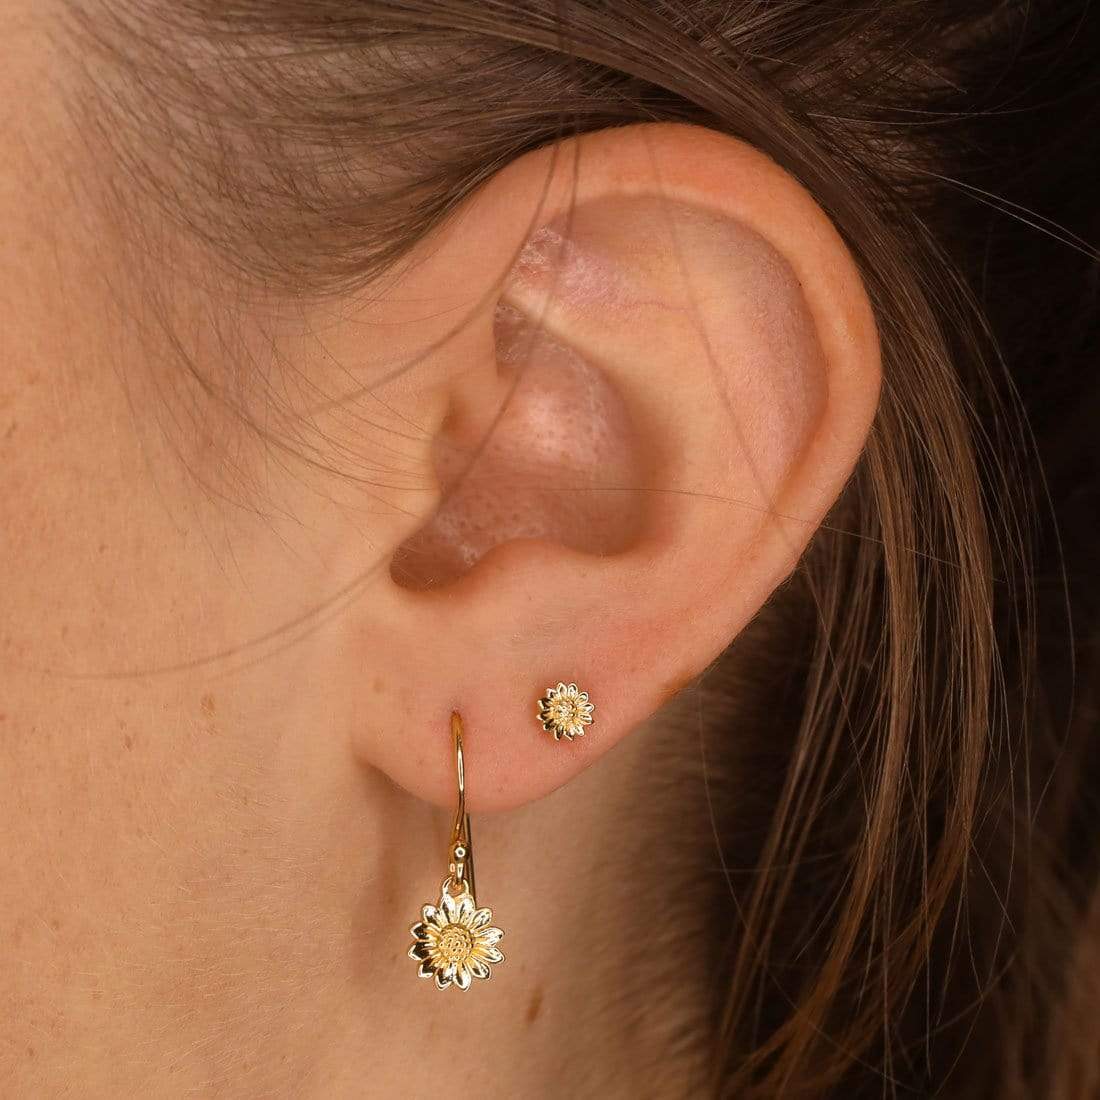 E589G - Tiny Delicate Sunflower Earrings Gold